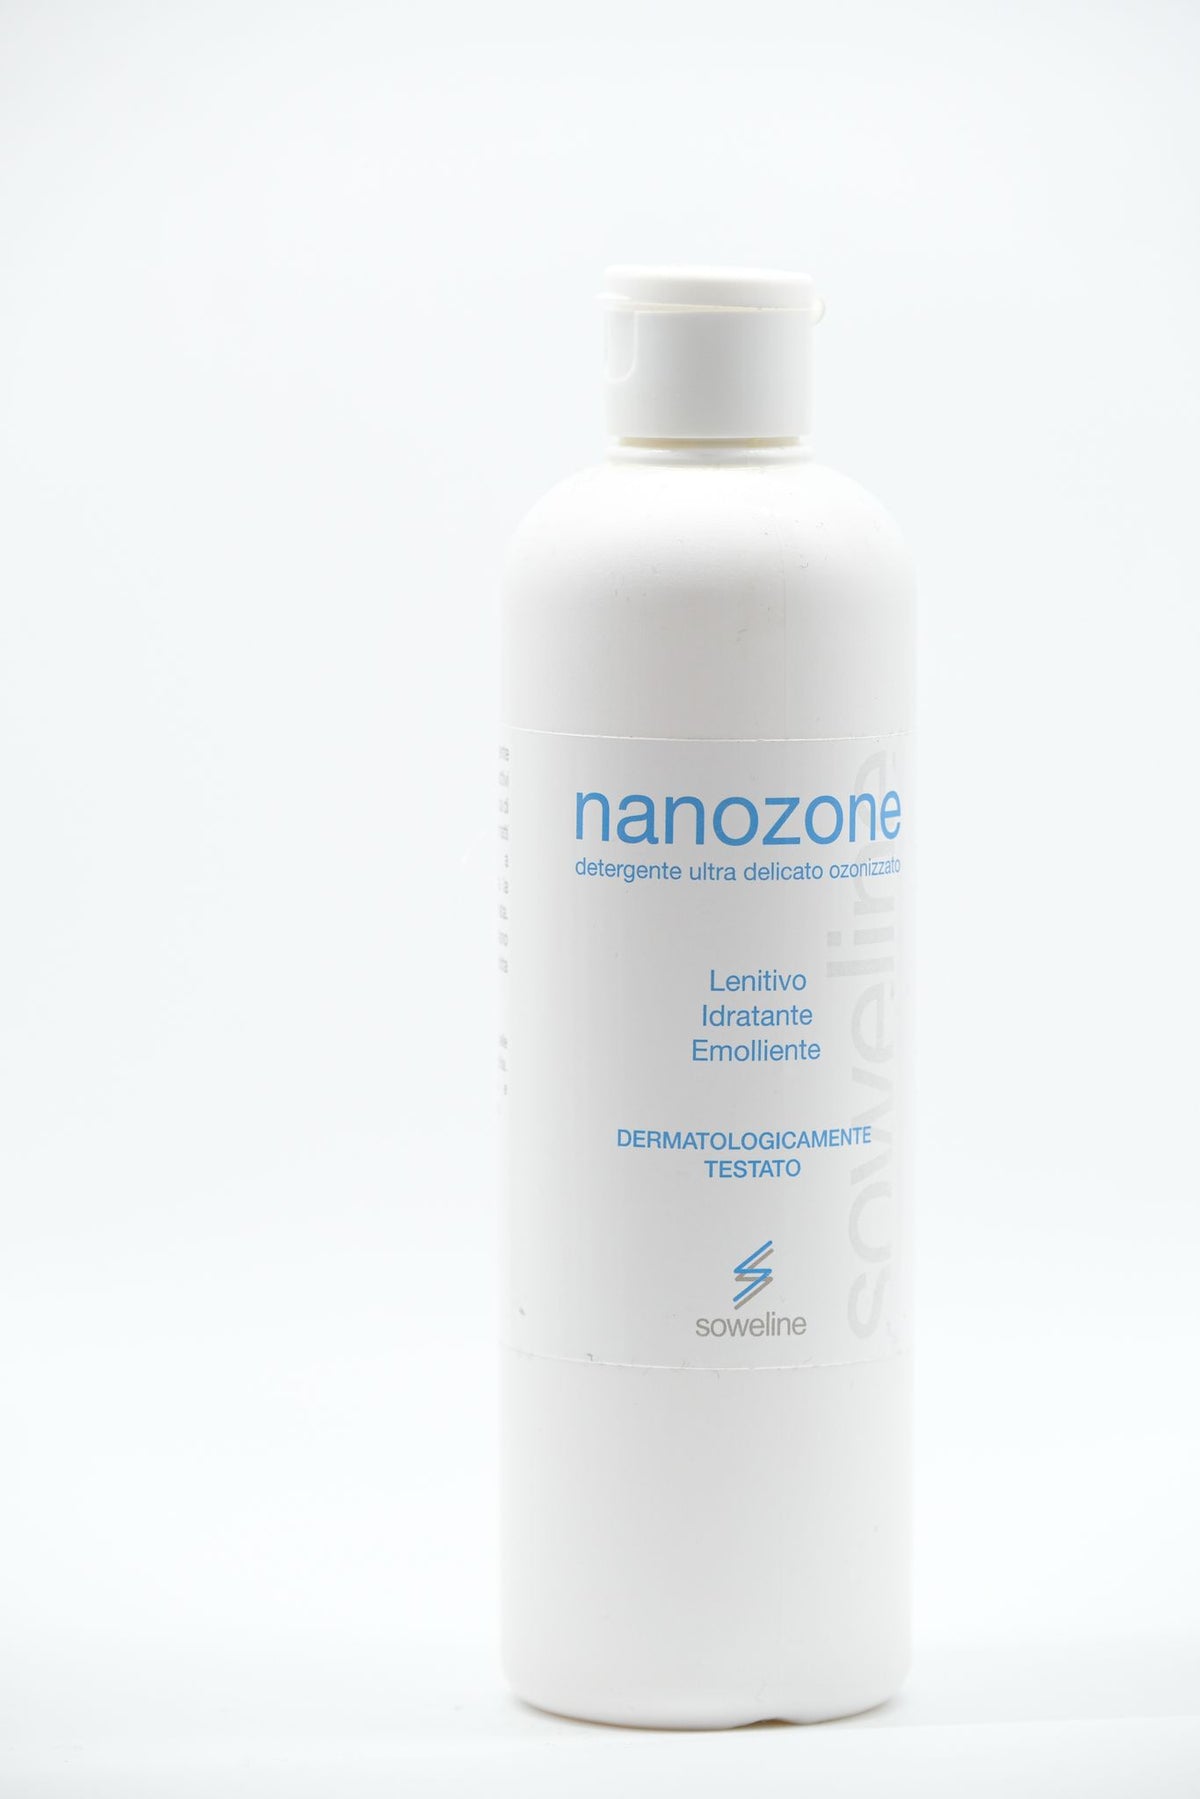 Nanozone